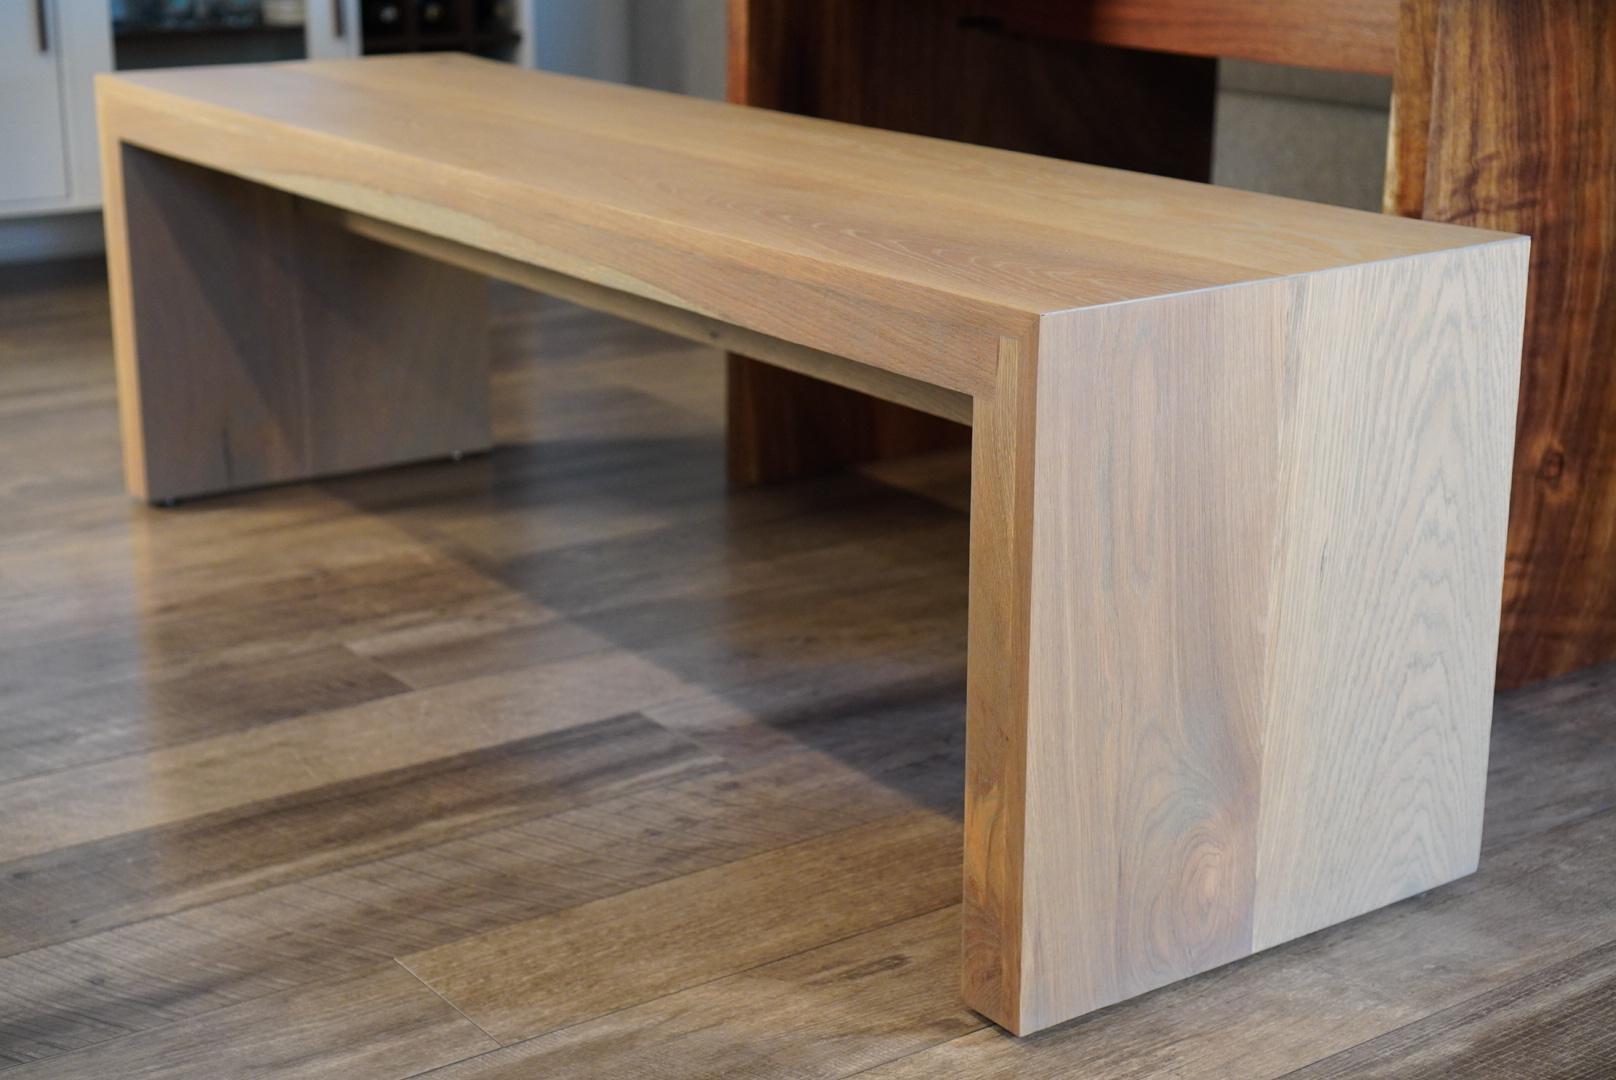 Wir stellen unsere 21st Century White Oak Bench vor, eine vielseitige Ergänzung für jeden Raum, ob als stilvolle Esszimmerbank oder als einladende Sitzgelegenheit im Eingangsbereich Ihres Hauses oder Büros. Diese handgefertigte und sorgfältig